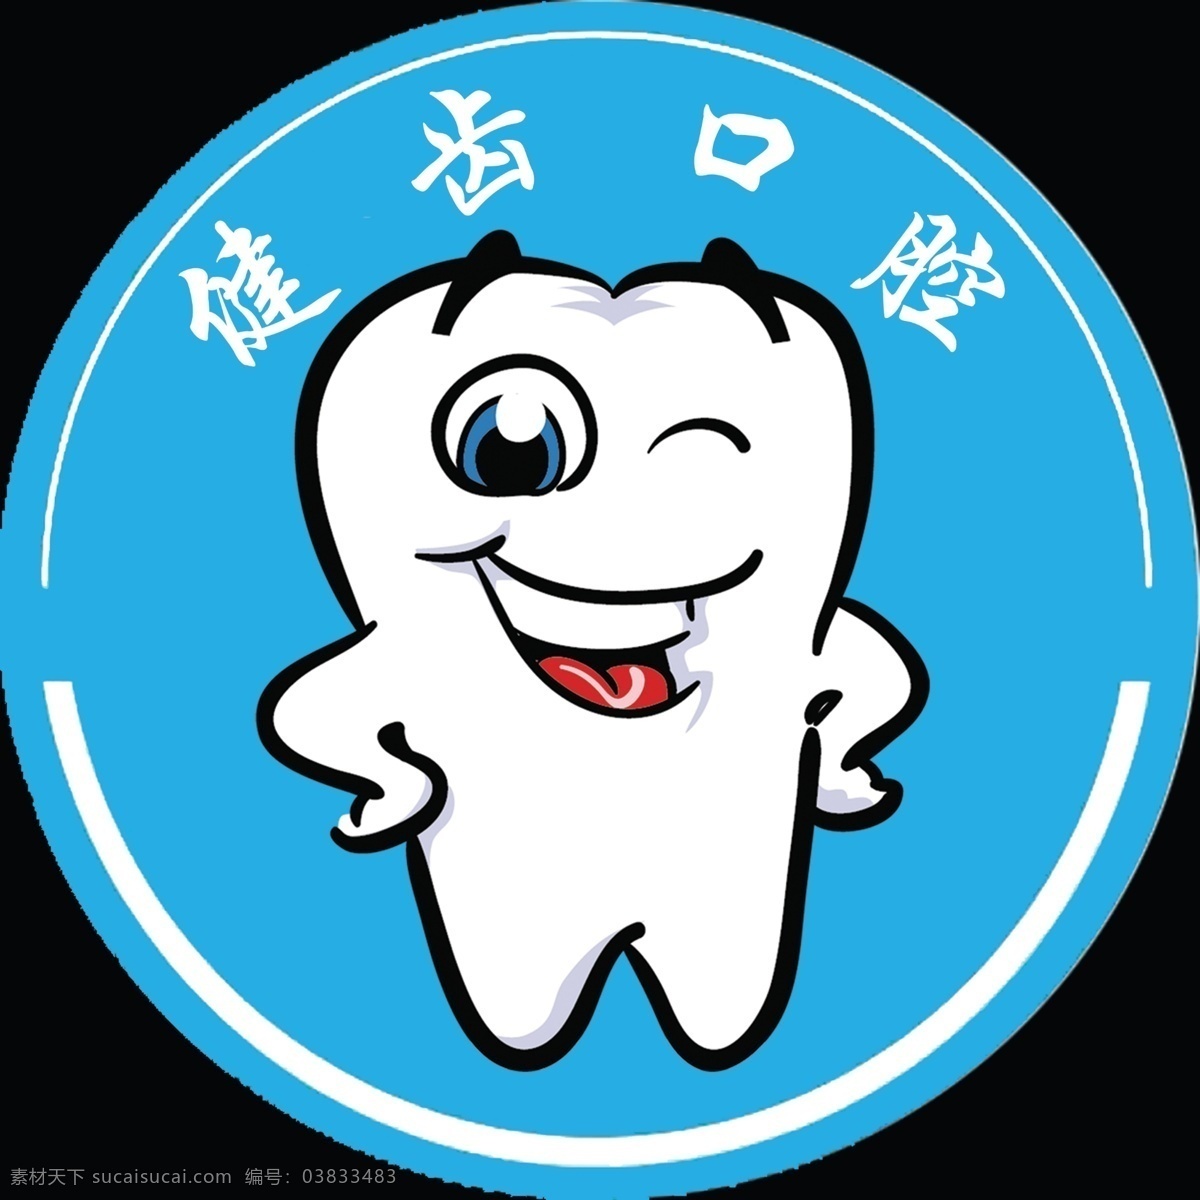 口腔图片 车贴 写真 牙齿 齿科 logo设计